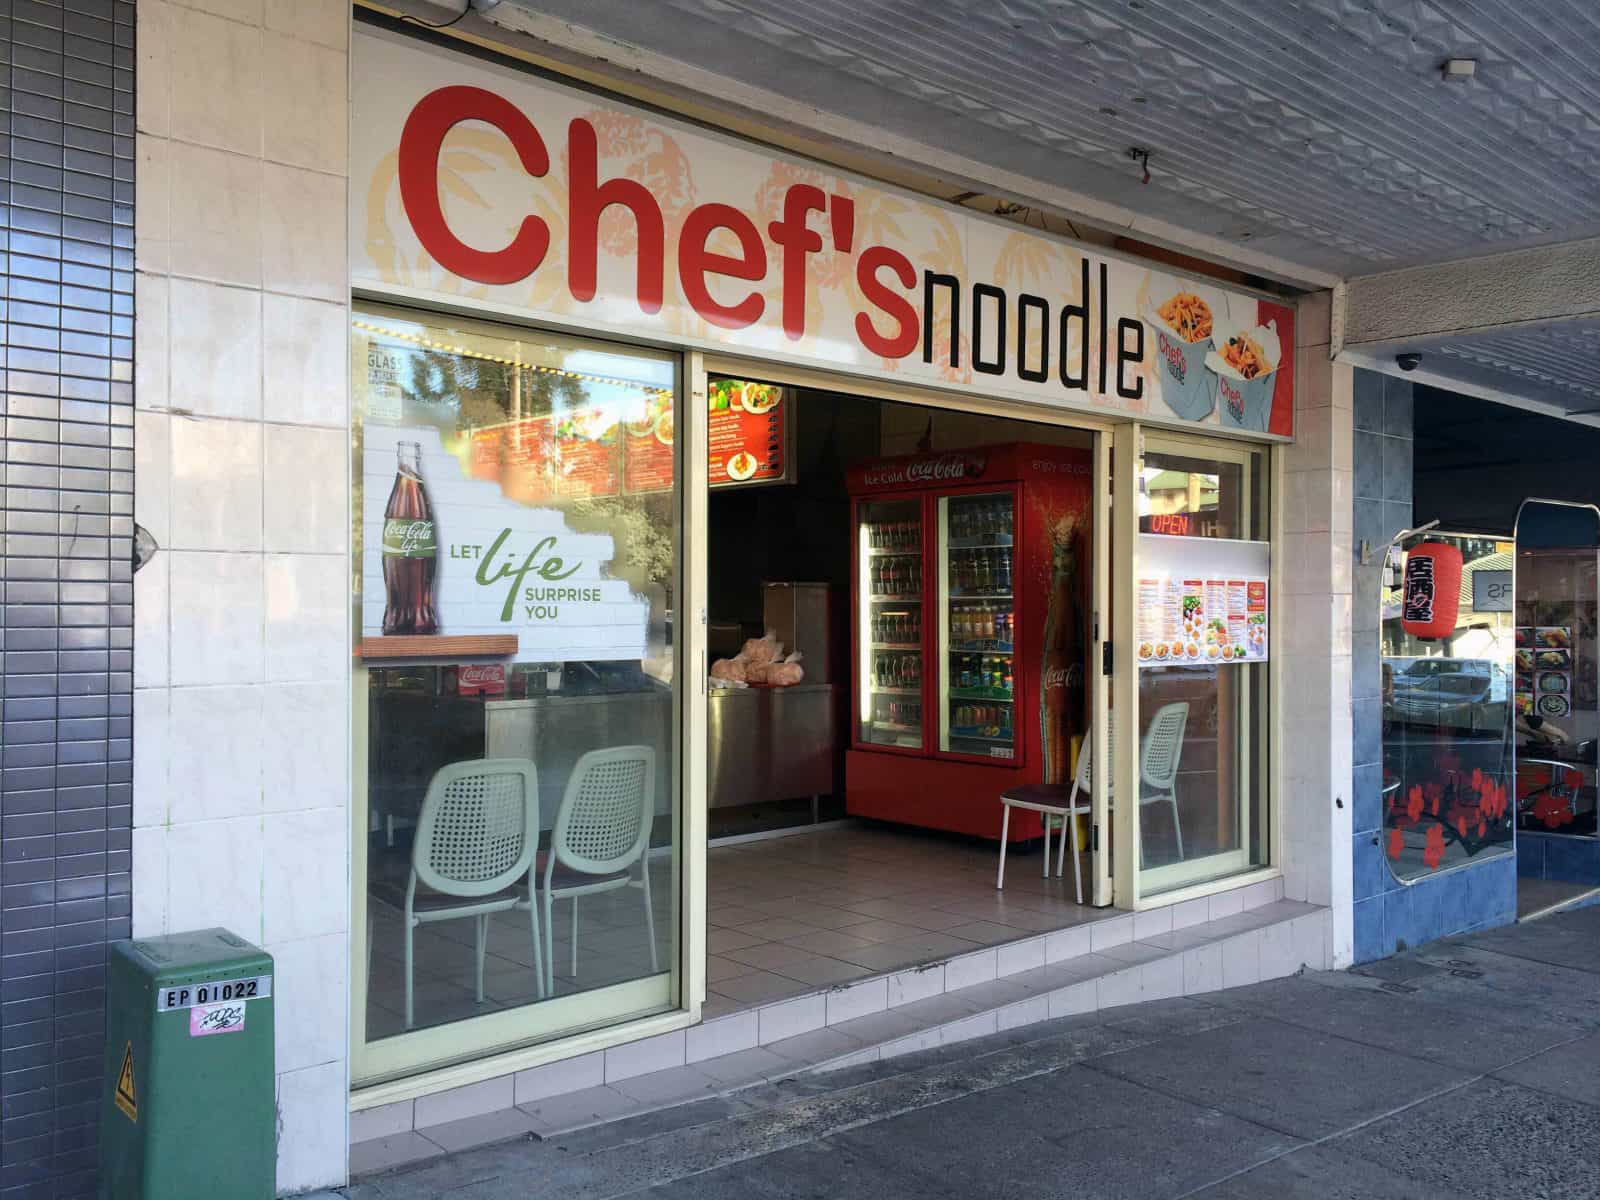 Chef's Noodle